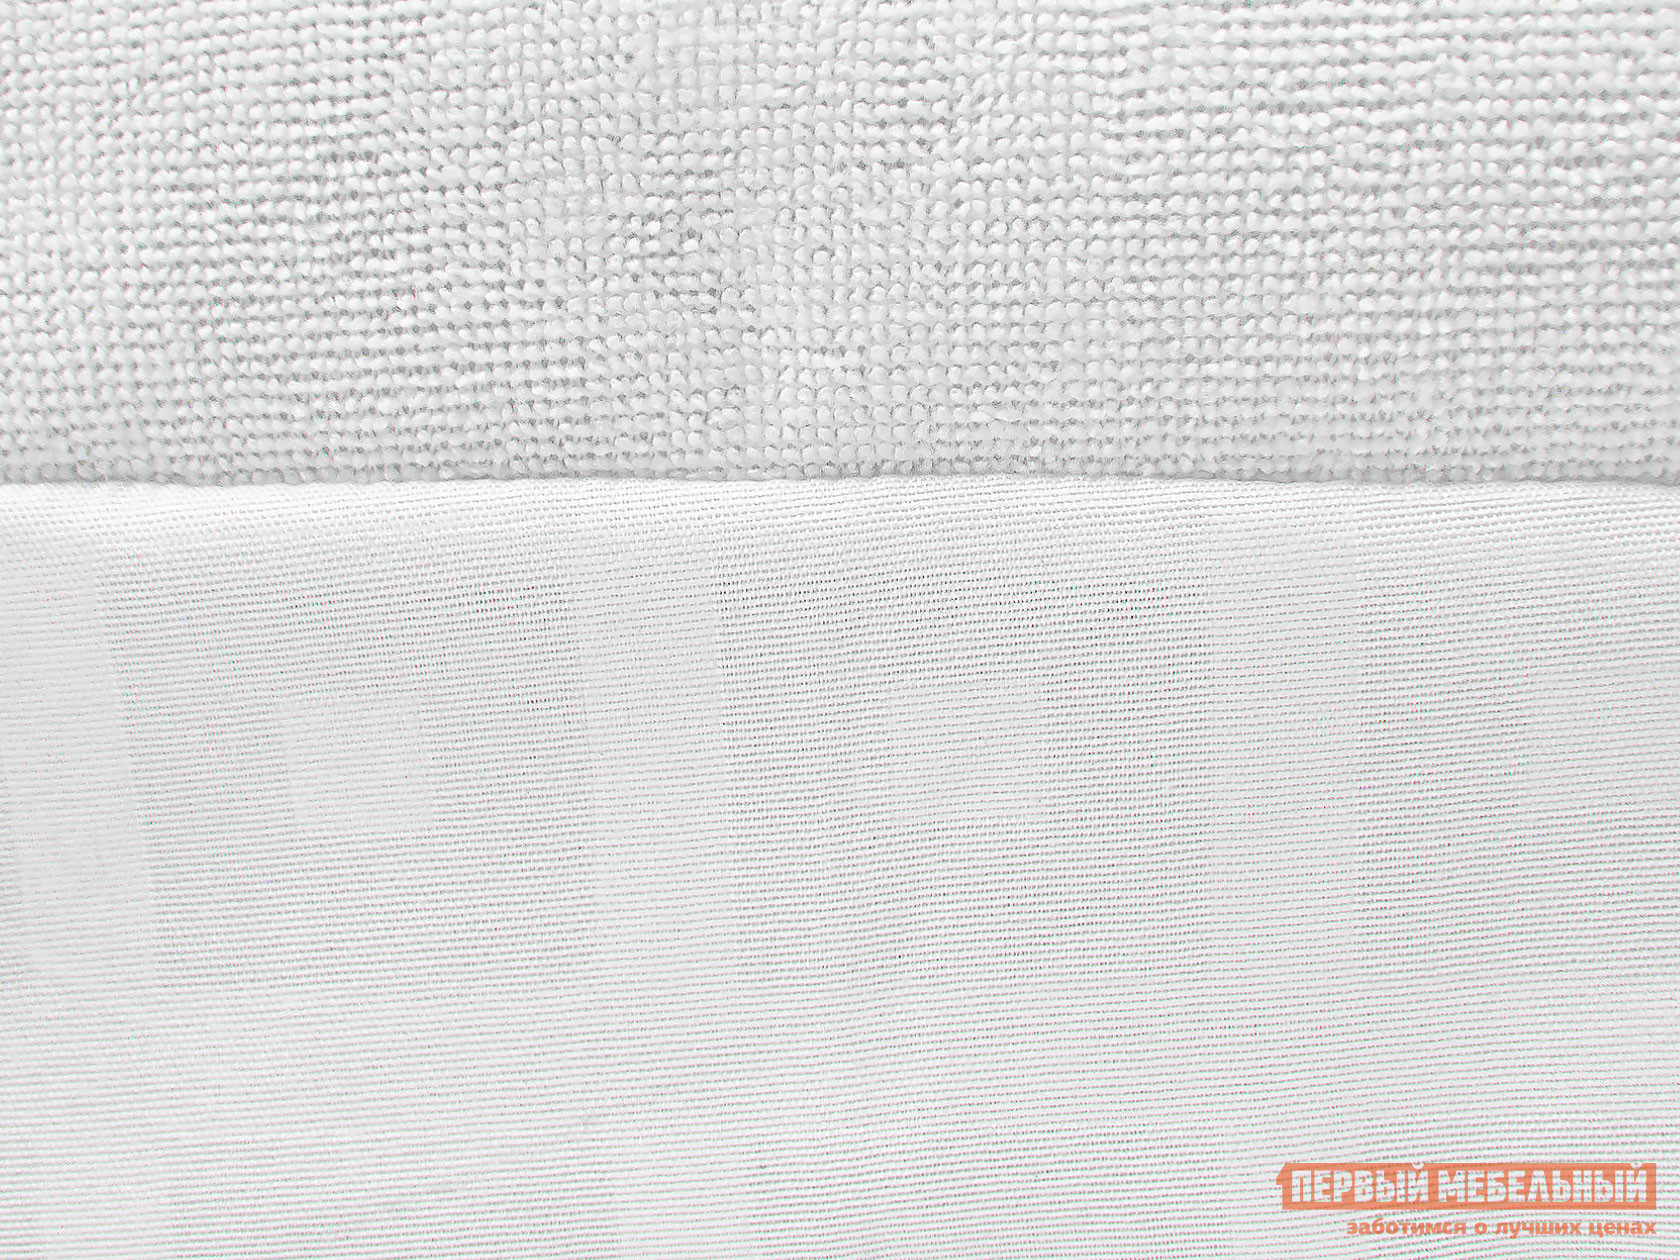 Чехол для матраса  Фулл протекшн с бортом 2 Белый махровый, 1400 Х 2000 мм от Первый Мебельный